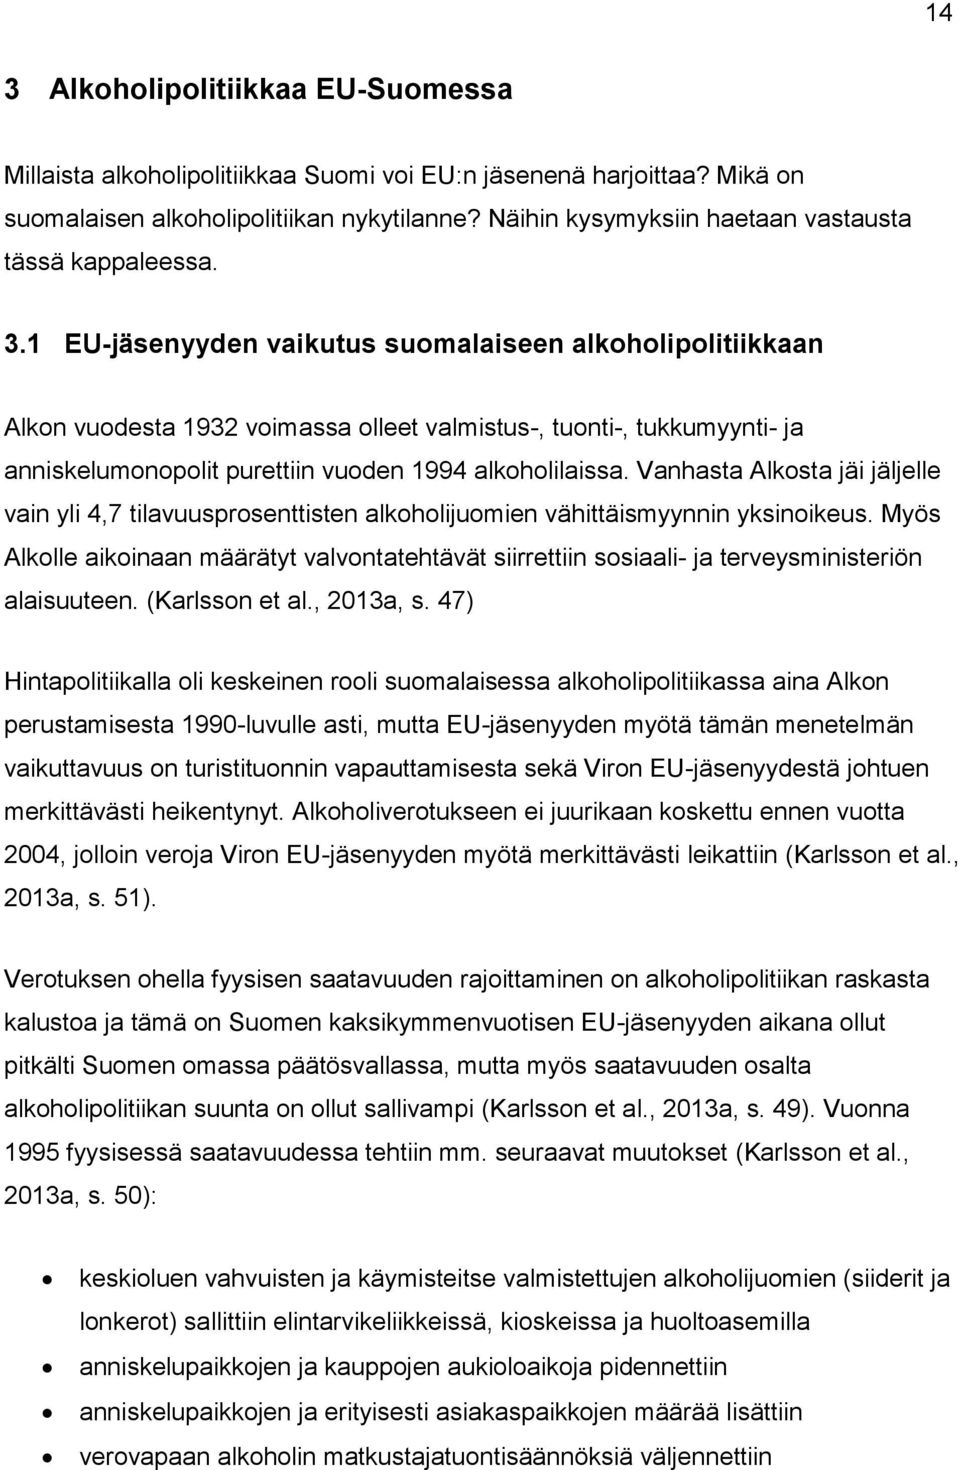 1 EU-jäsenyyden vaikutus suomalaiseen alkoholipolitiikkaan Alkon vuodesta 1932 voimassa olleet valmistus-, tuonti-, tukkumyynti- ja anniskelumonopolit purettiin vuoden 1994 alkoholilaissa.